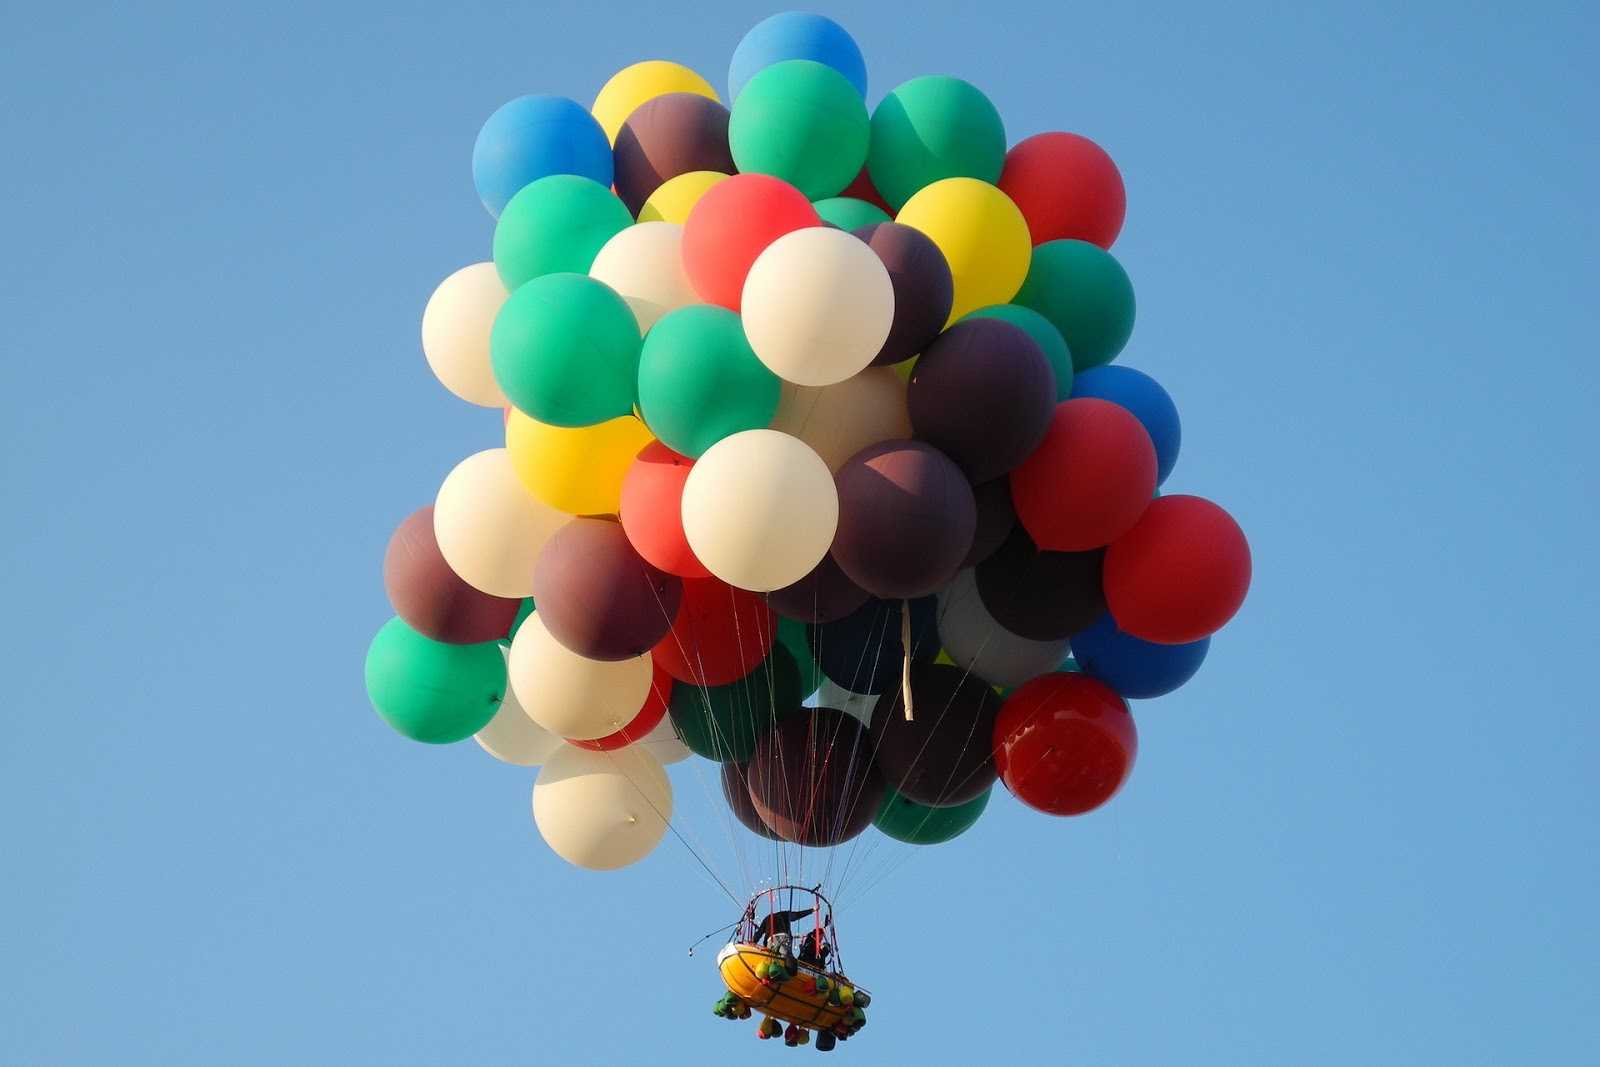 Barca llevada por el cielo con muchos globos